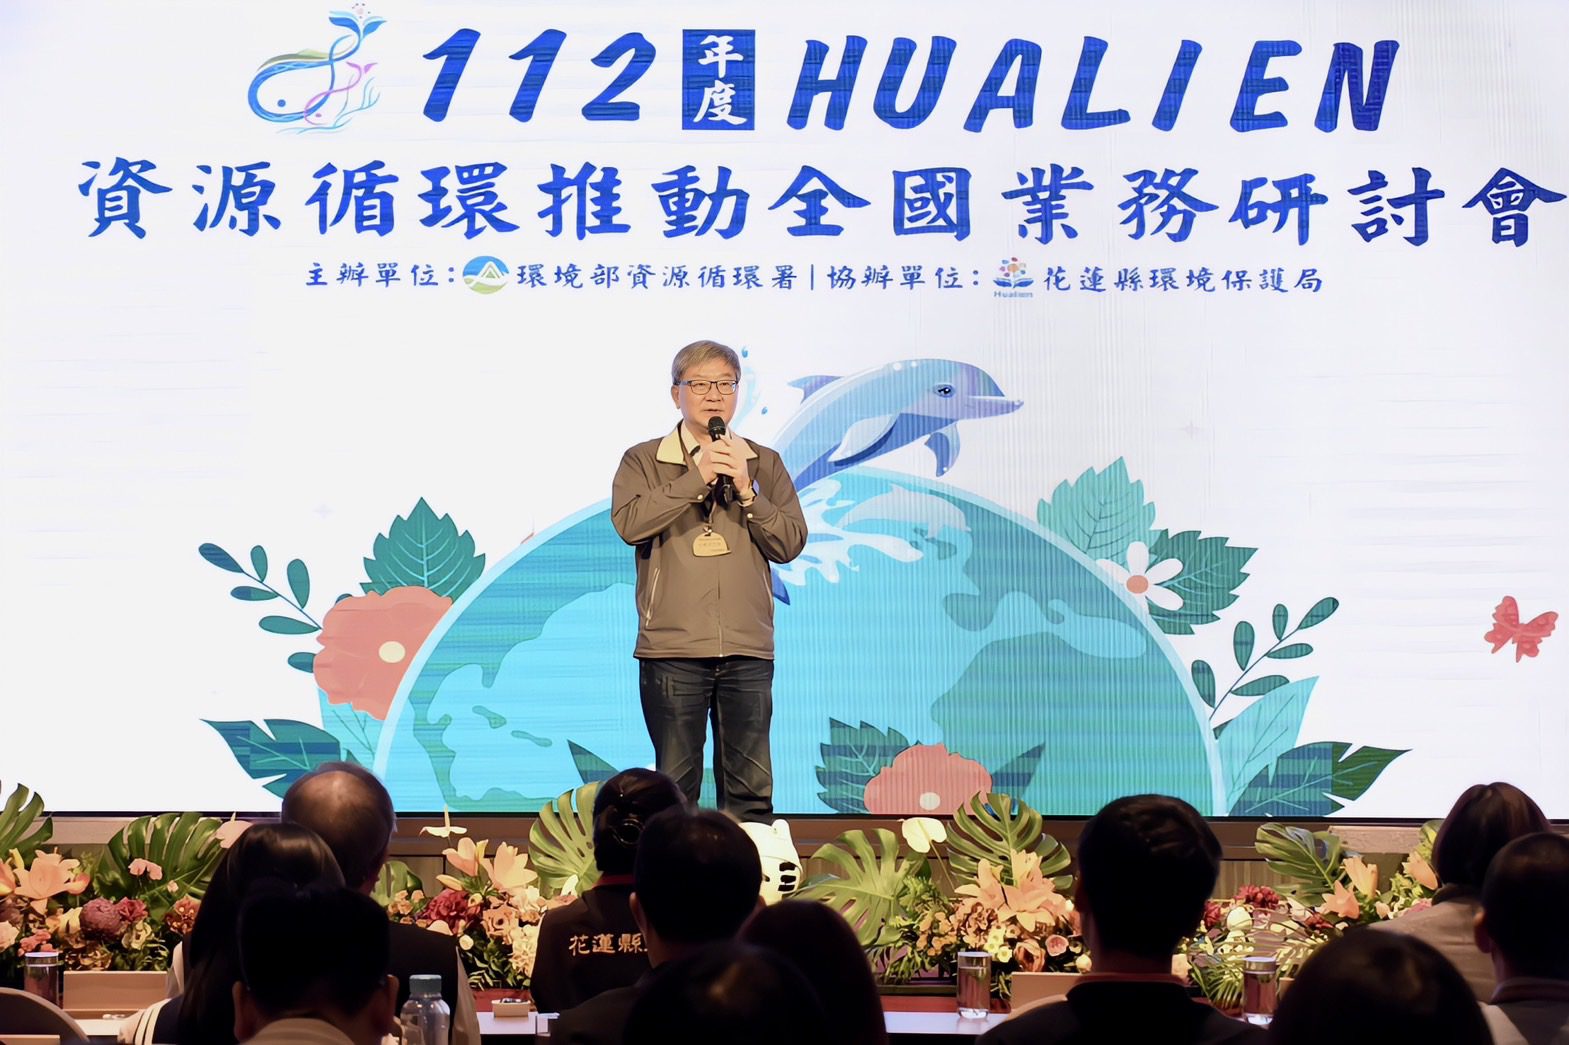 「淨零排放、永續循環」新未來 資源循環推動全國業務研討會花蓮登場 - 早安台灣新聞 | Morning Taiwan News